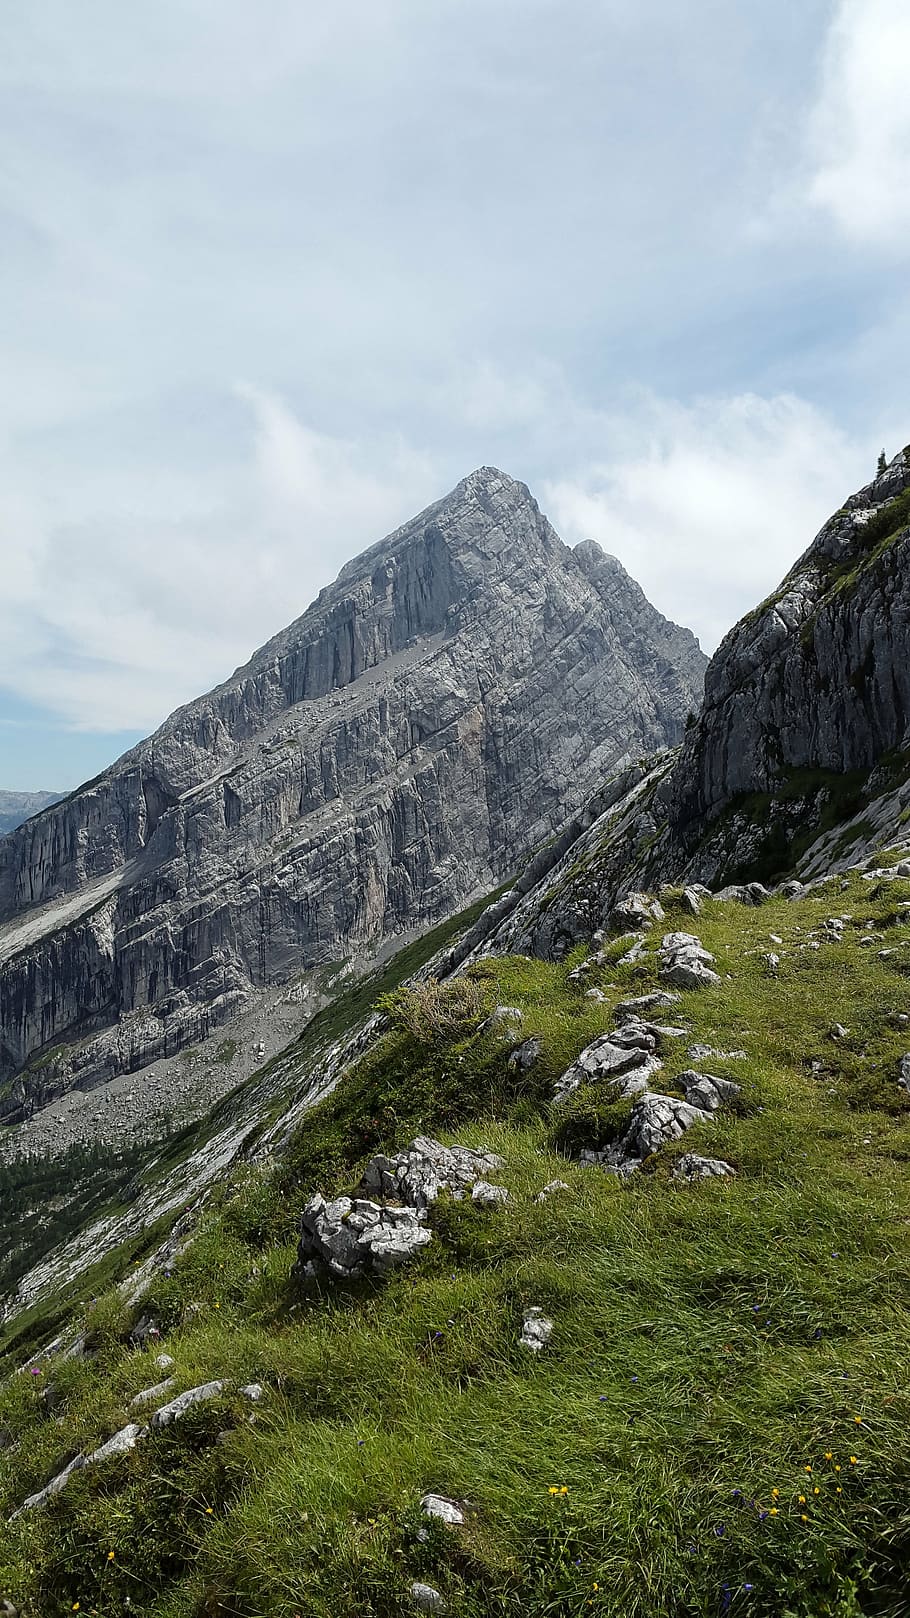 kleiner watzmann, cumbre, watzmannfrau, watzfrau, alpino, roca, berchtesgadener land, montañas, berchtesgaden alps, parque nacional berchtesgaden